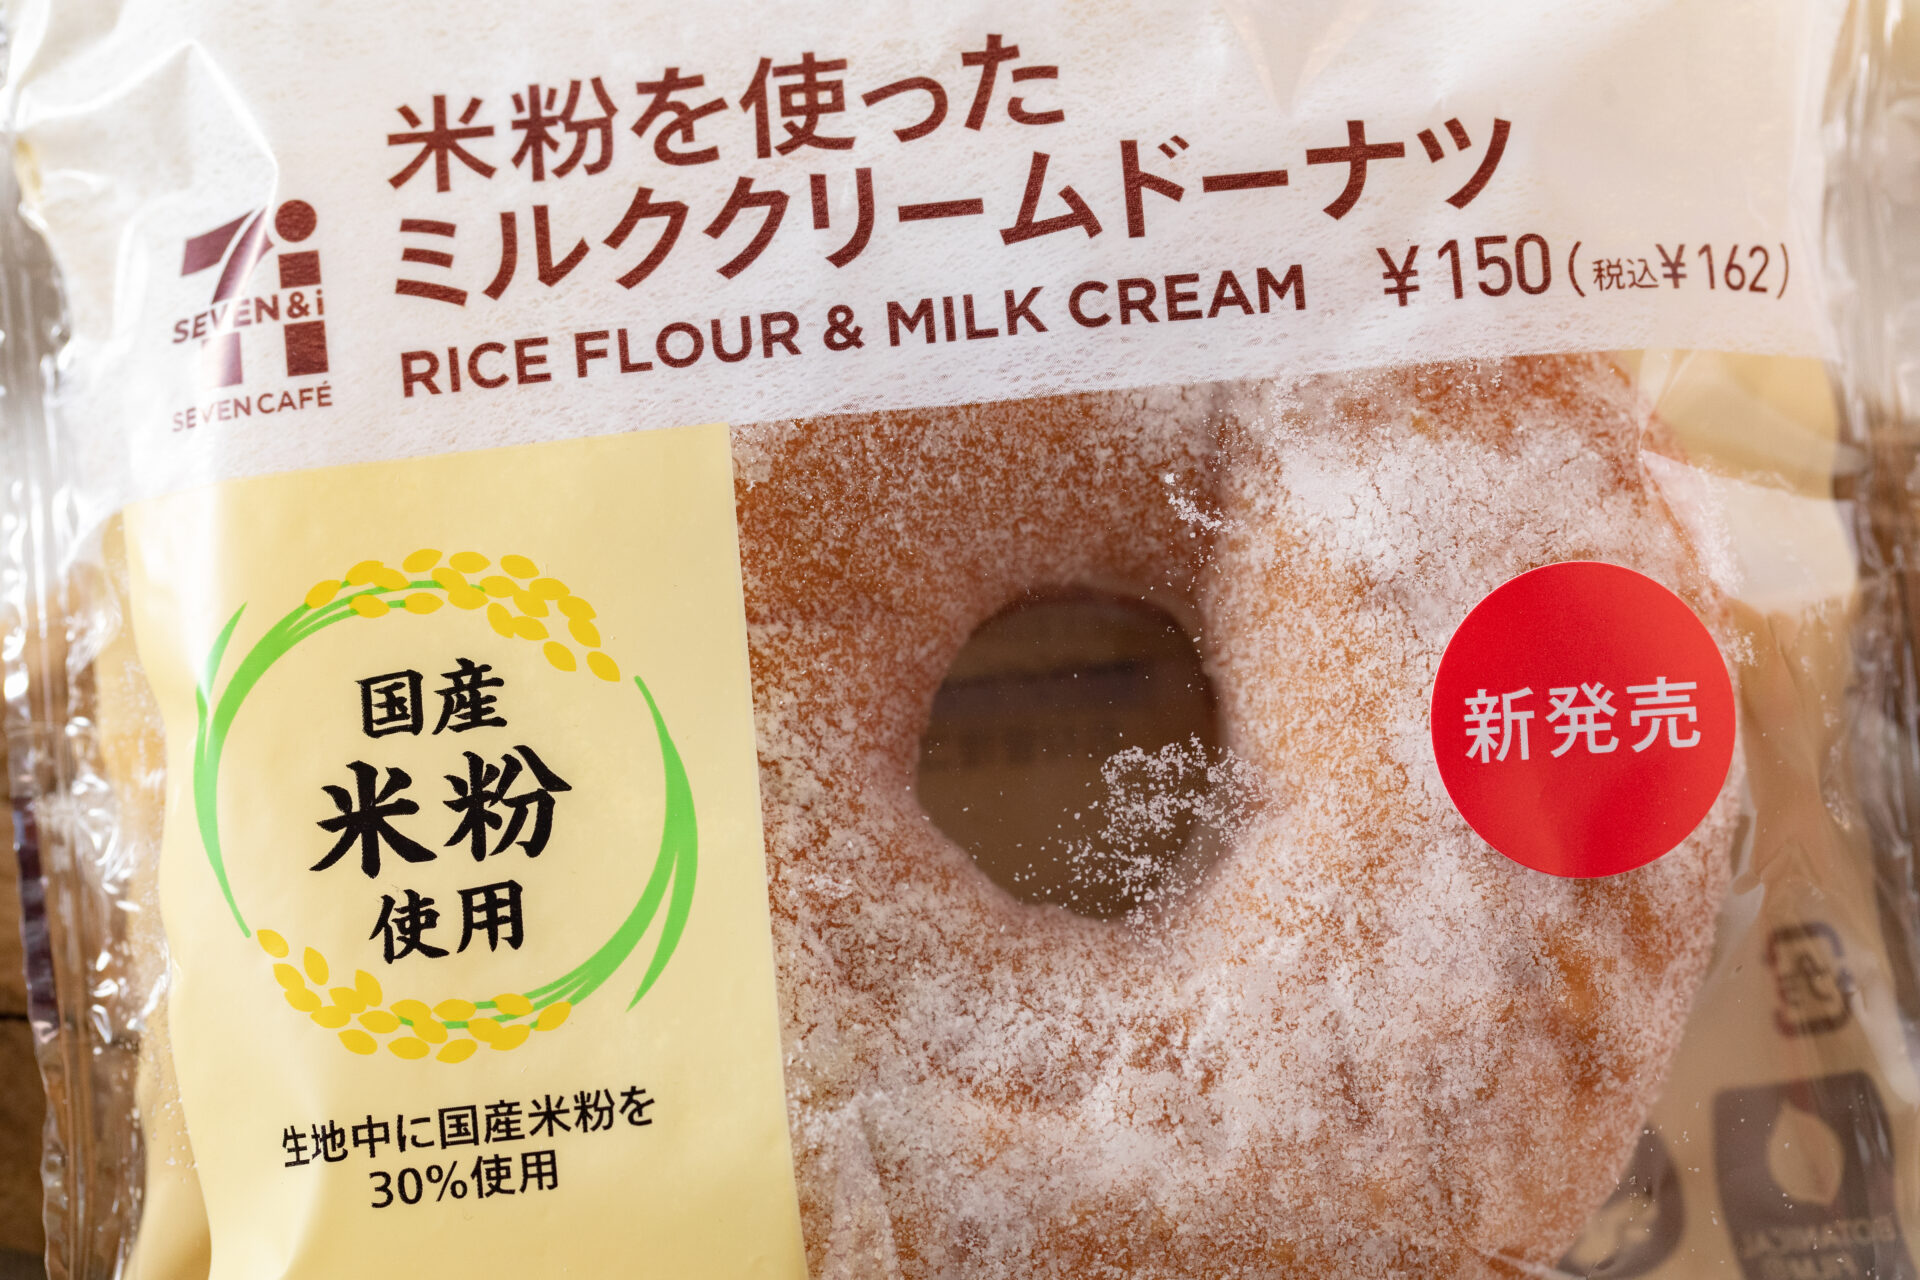 セブン-イレブン『米粉を使ったミルククリームドーナツ』